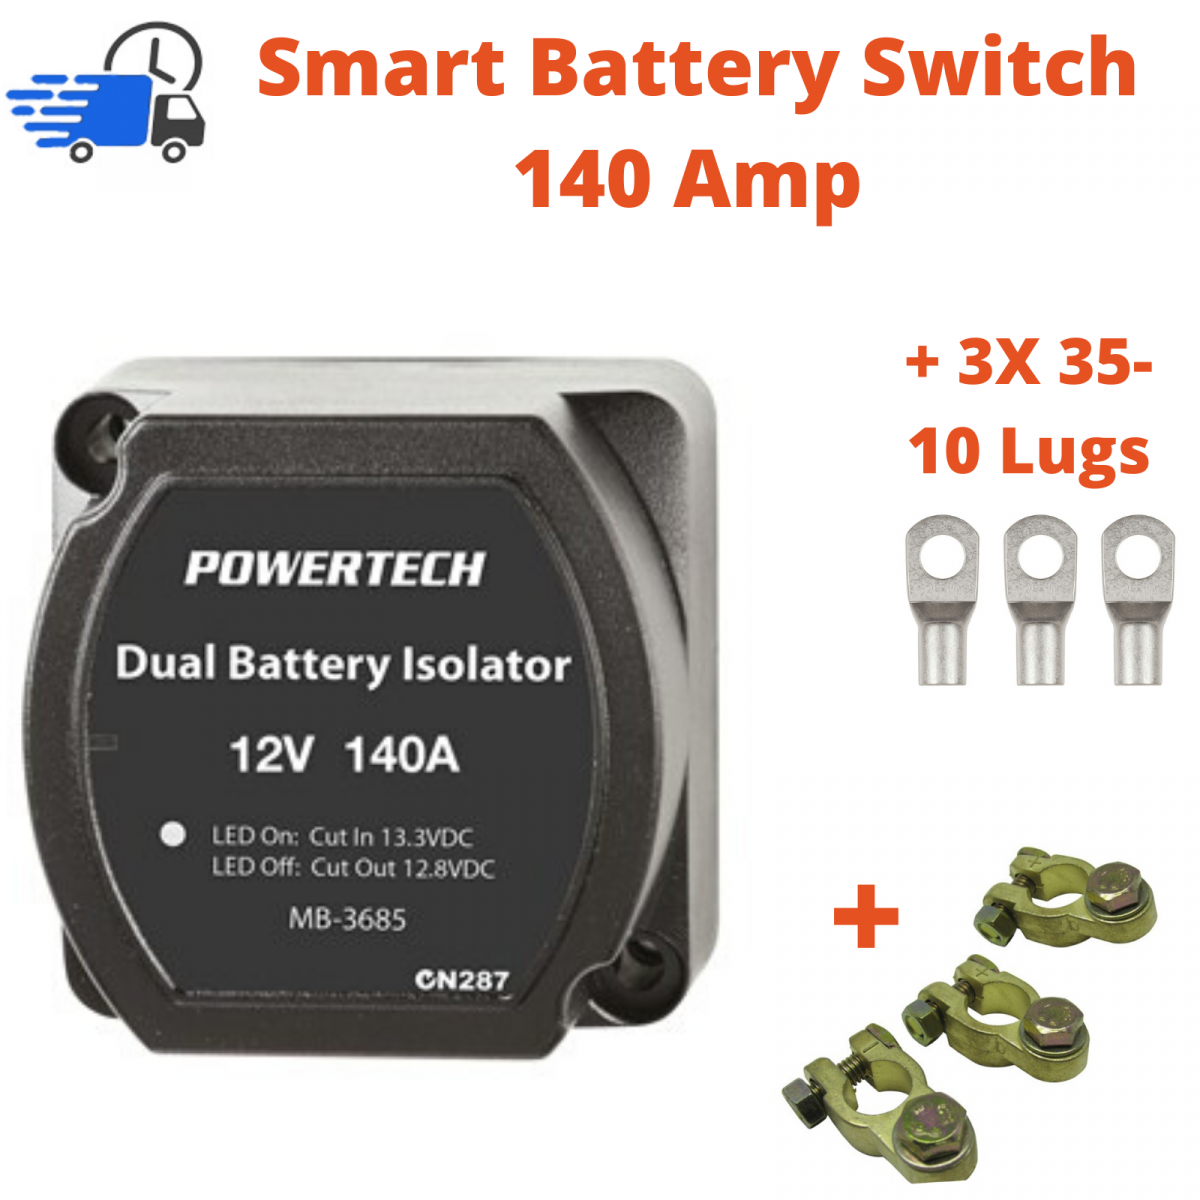 Voltage sensitive relay, smart 12V battery isolator, Dual Battery
Isolator Kit 